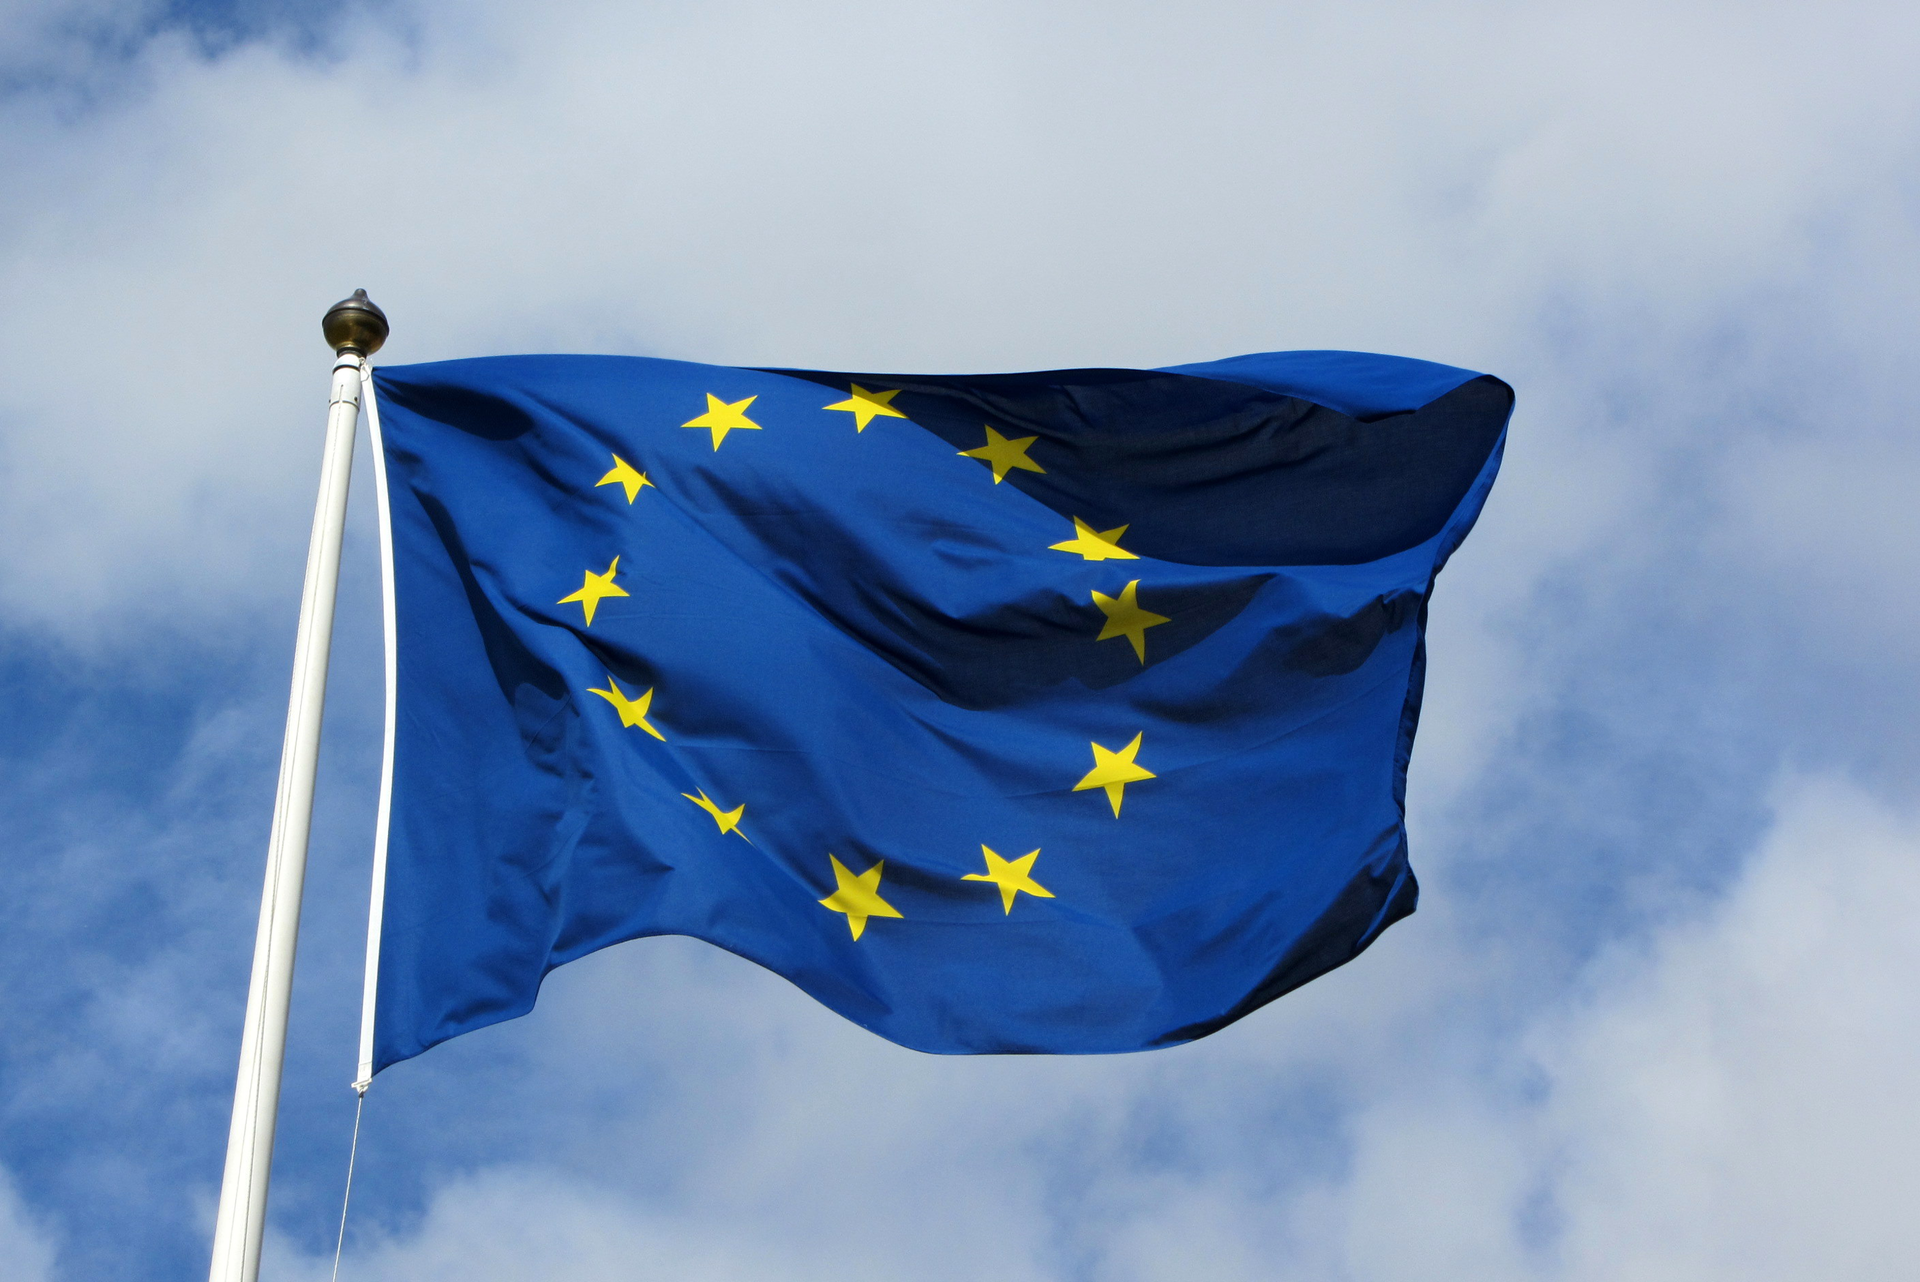 Zdjęcie przedstawia flagę Unii Europejskiej zawieszoną na maszcie. Maszt po lewej stronie zdjęcia. Flaga powiewa skierowana w prawo. Na granatowym tle 12 pięcioramiennych gwiazdek. Gwiazdy ułożone są w okrąg.